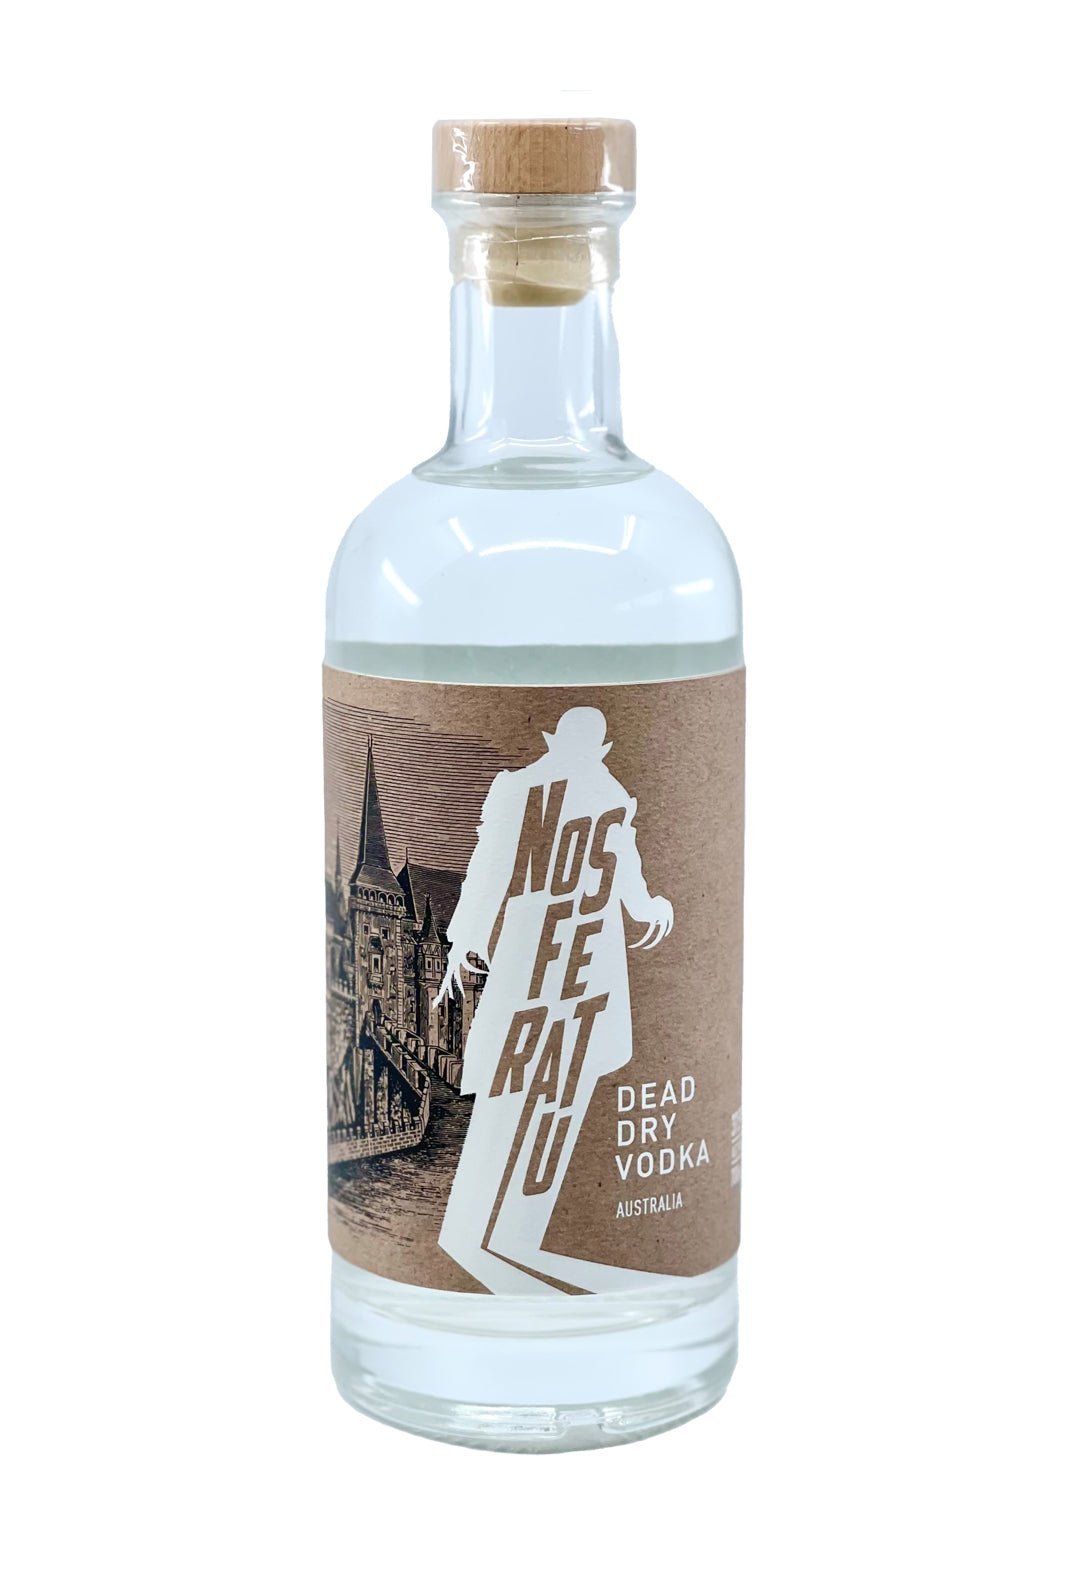 Dead Dry Vodka 37.5% 700ml | vodka | Shop online at Spirits of France